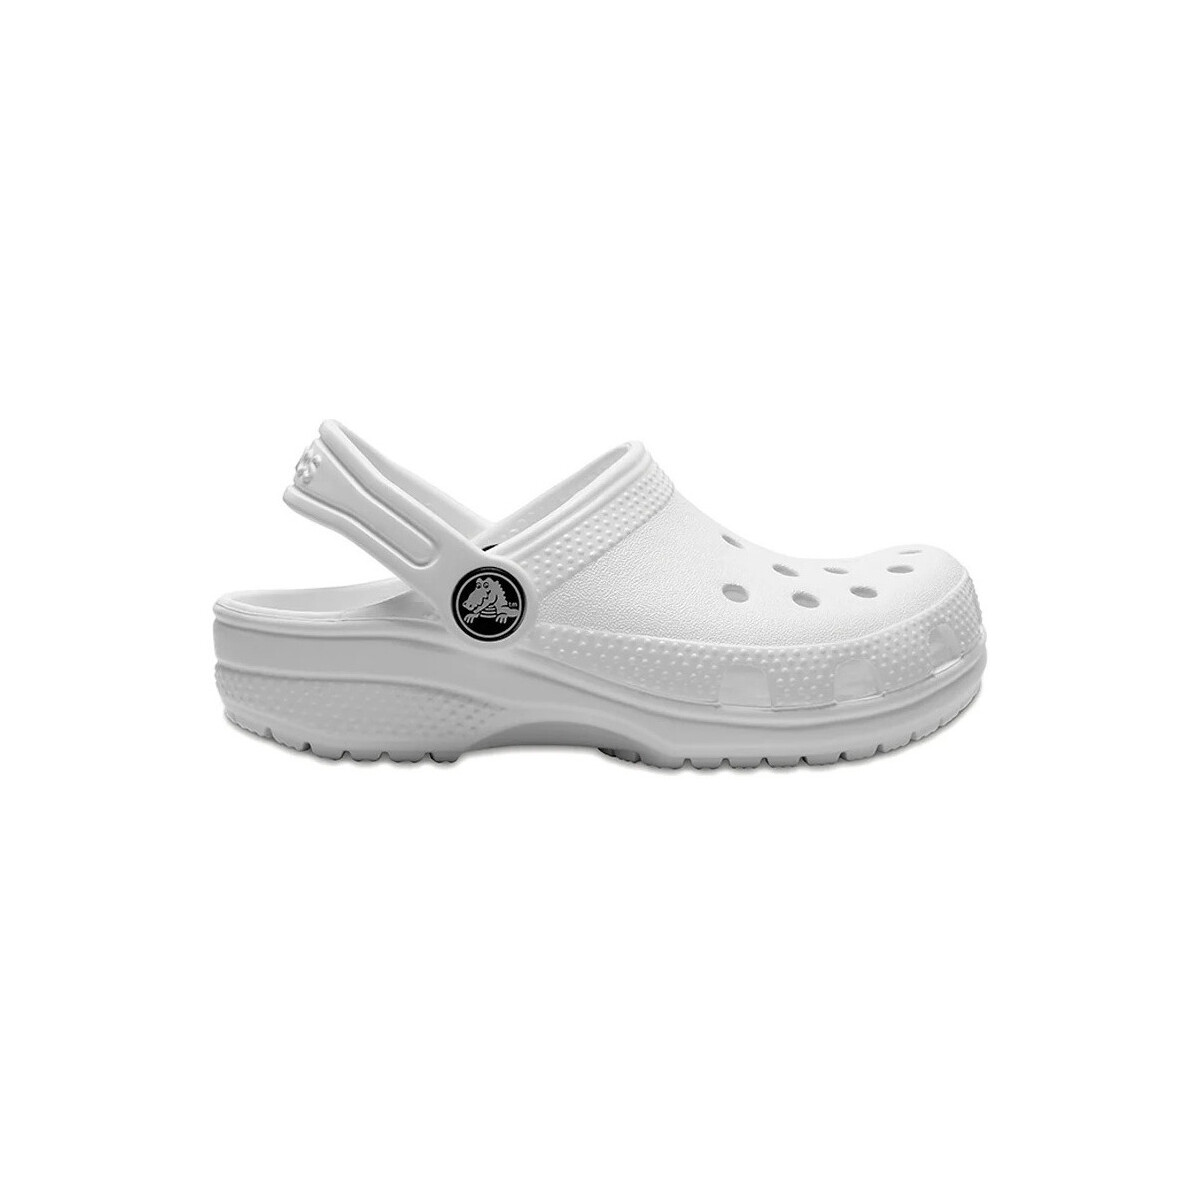 Zapatos Niños Deportivas Moda Crocs Classic Clog T Blanco